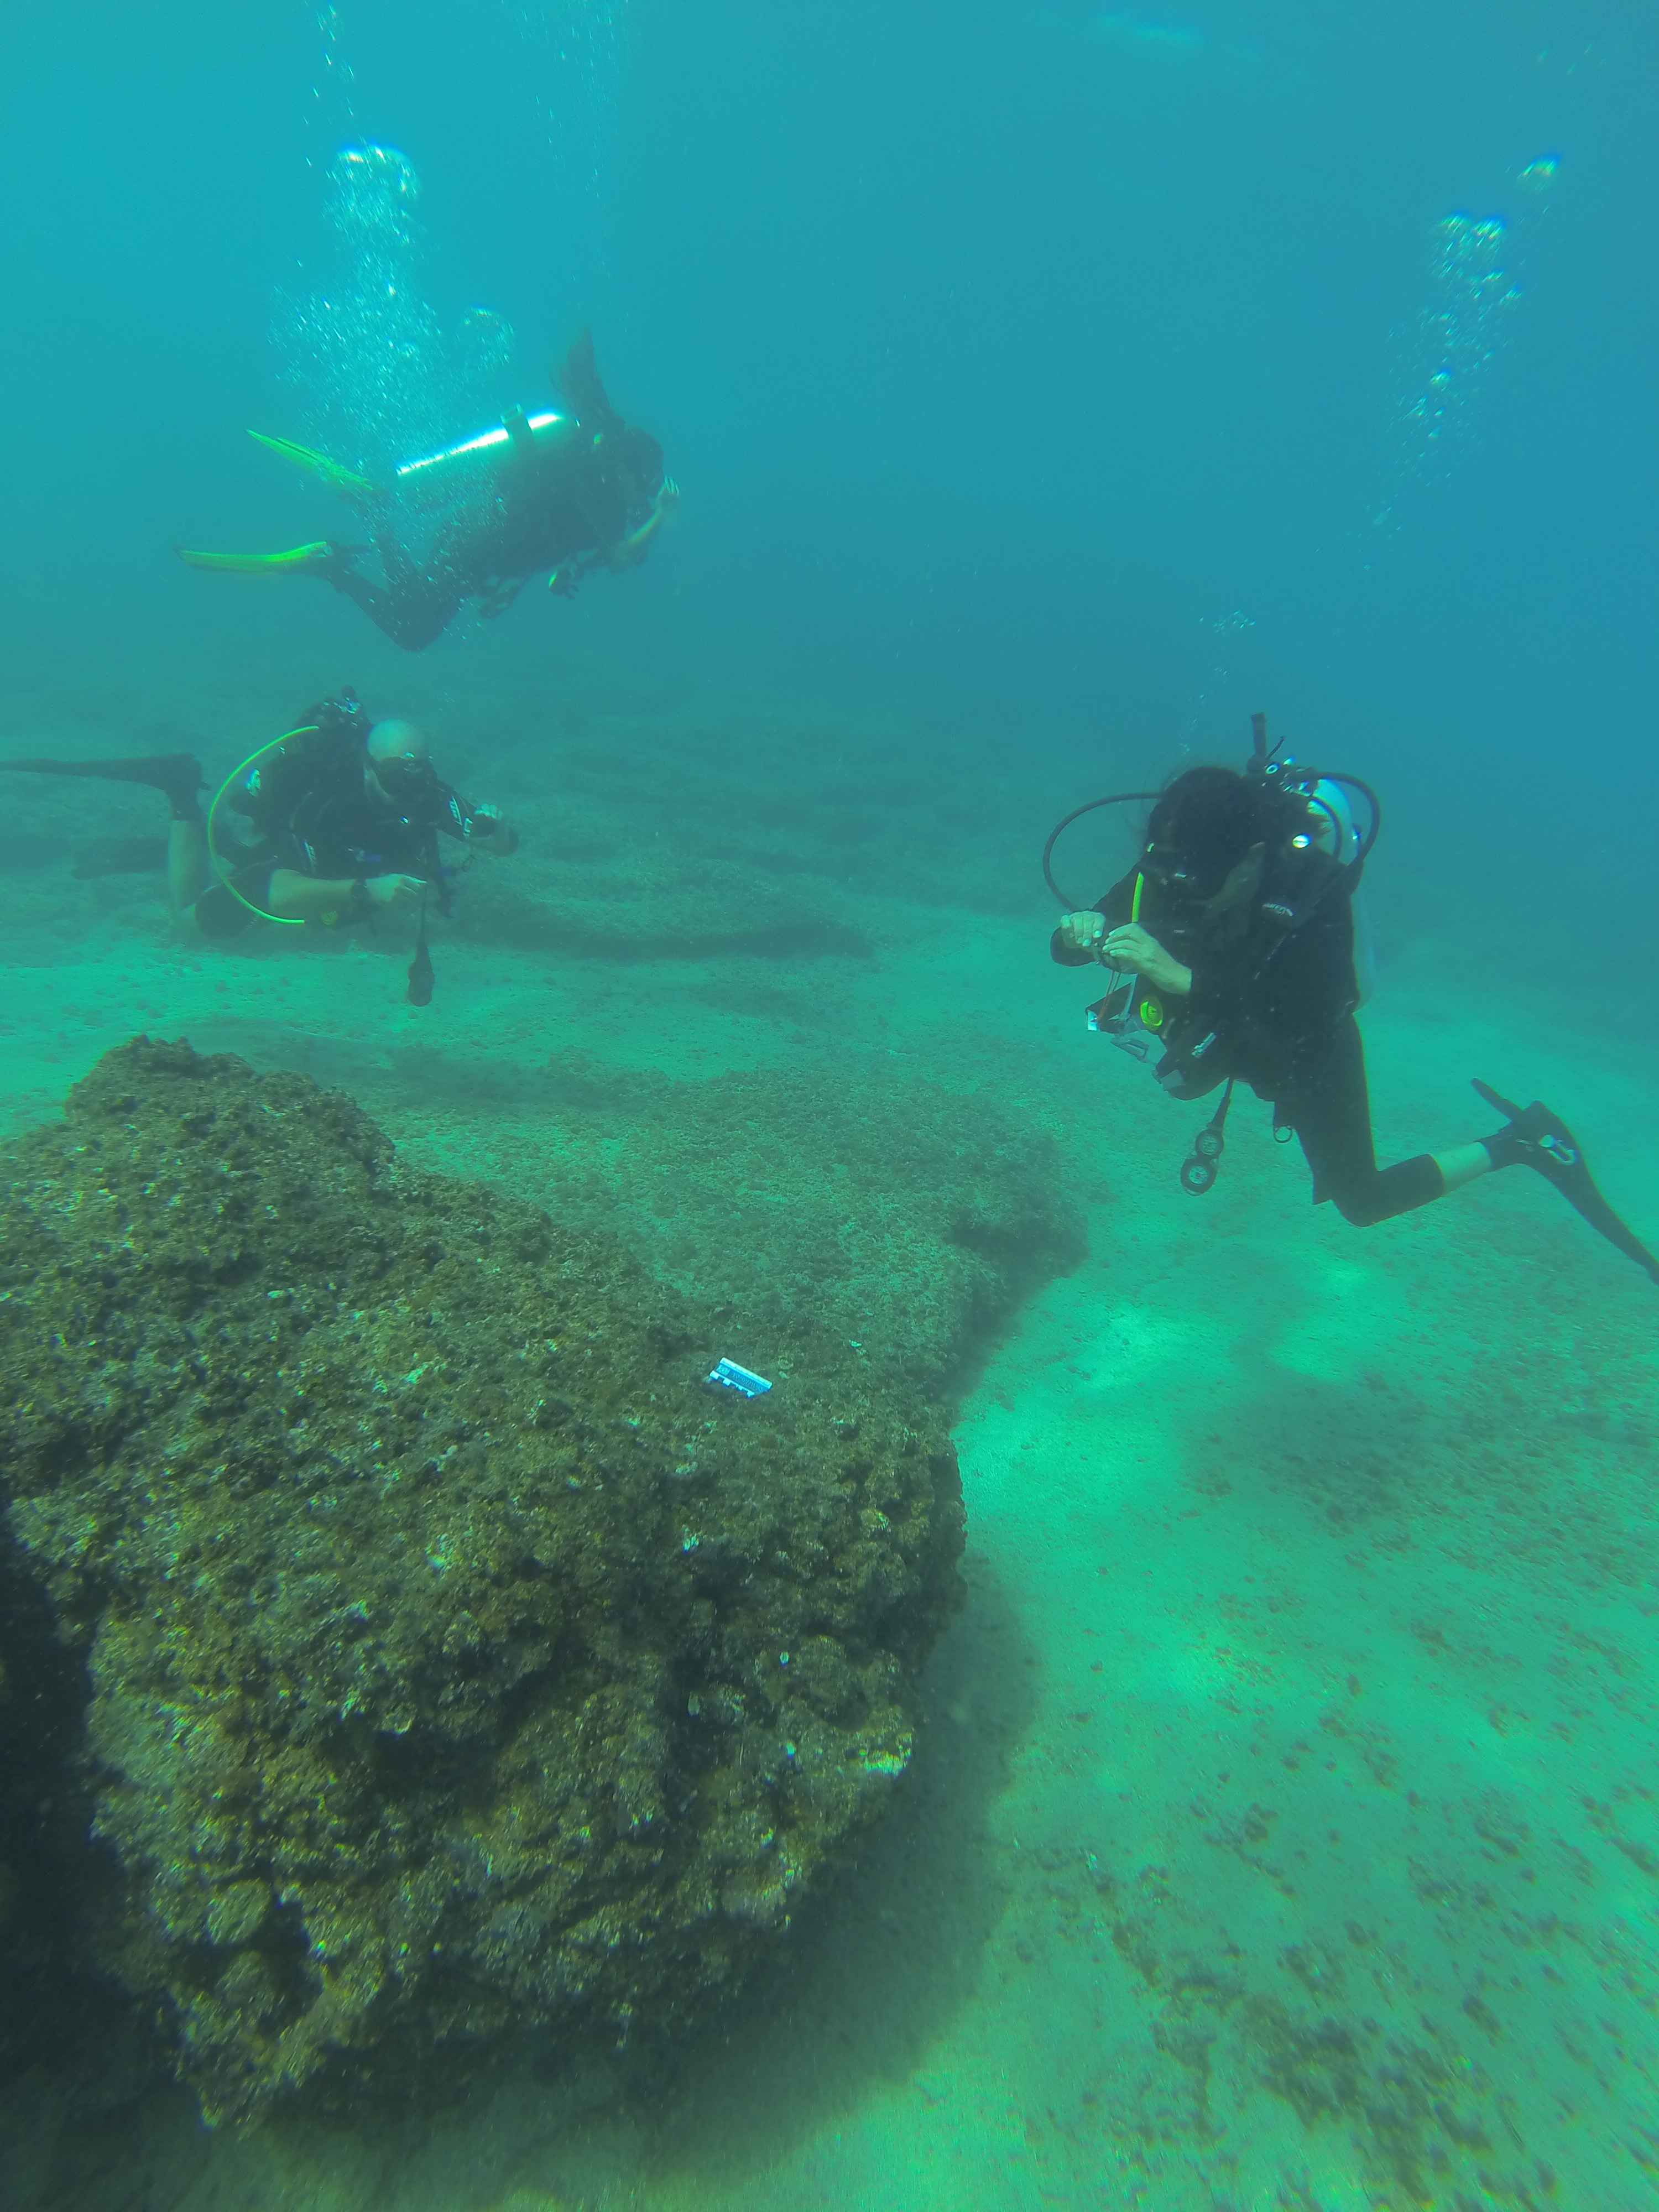 Underwater recording exercise using cameras